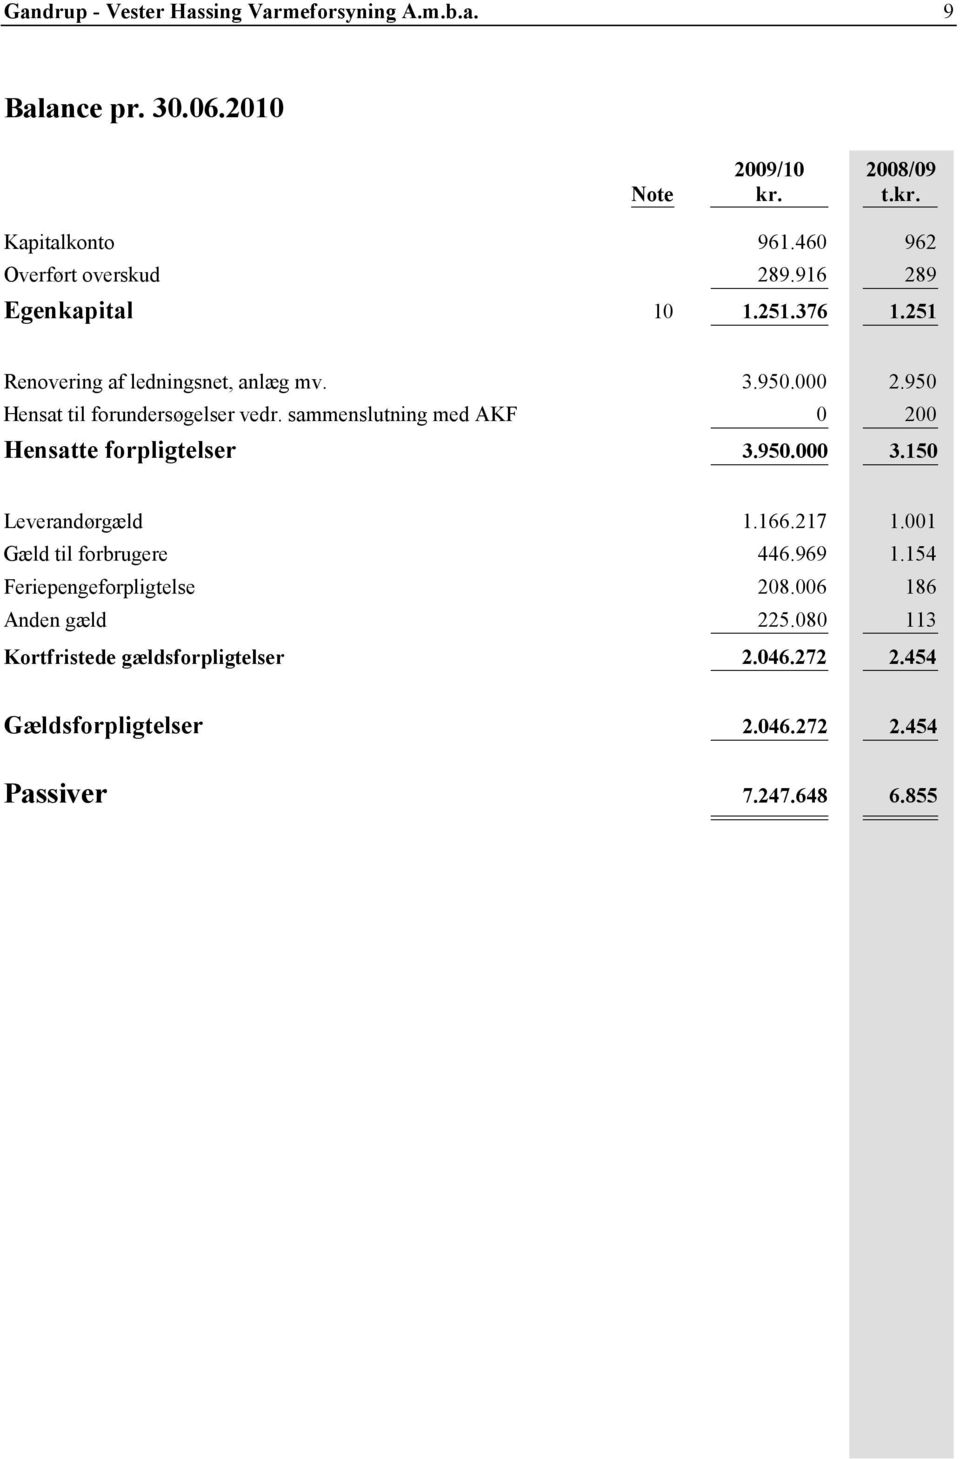 950 Hensat til forundersøgelser vedr. sammenslutning med AKF 0 200 Hensatte forpligtelser 3.950.000 3.150 Leverandørgæld 1.166.217 1.